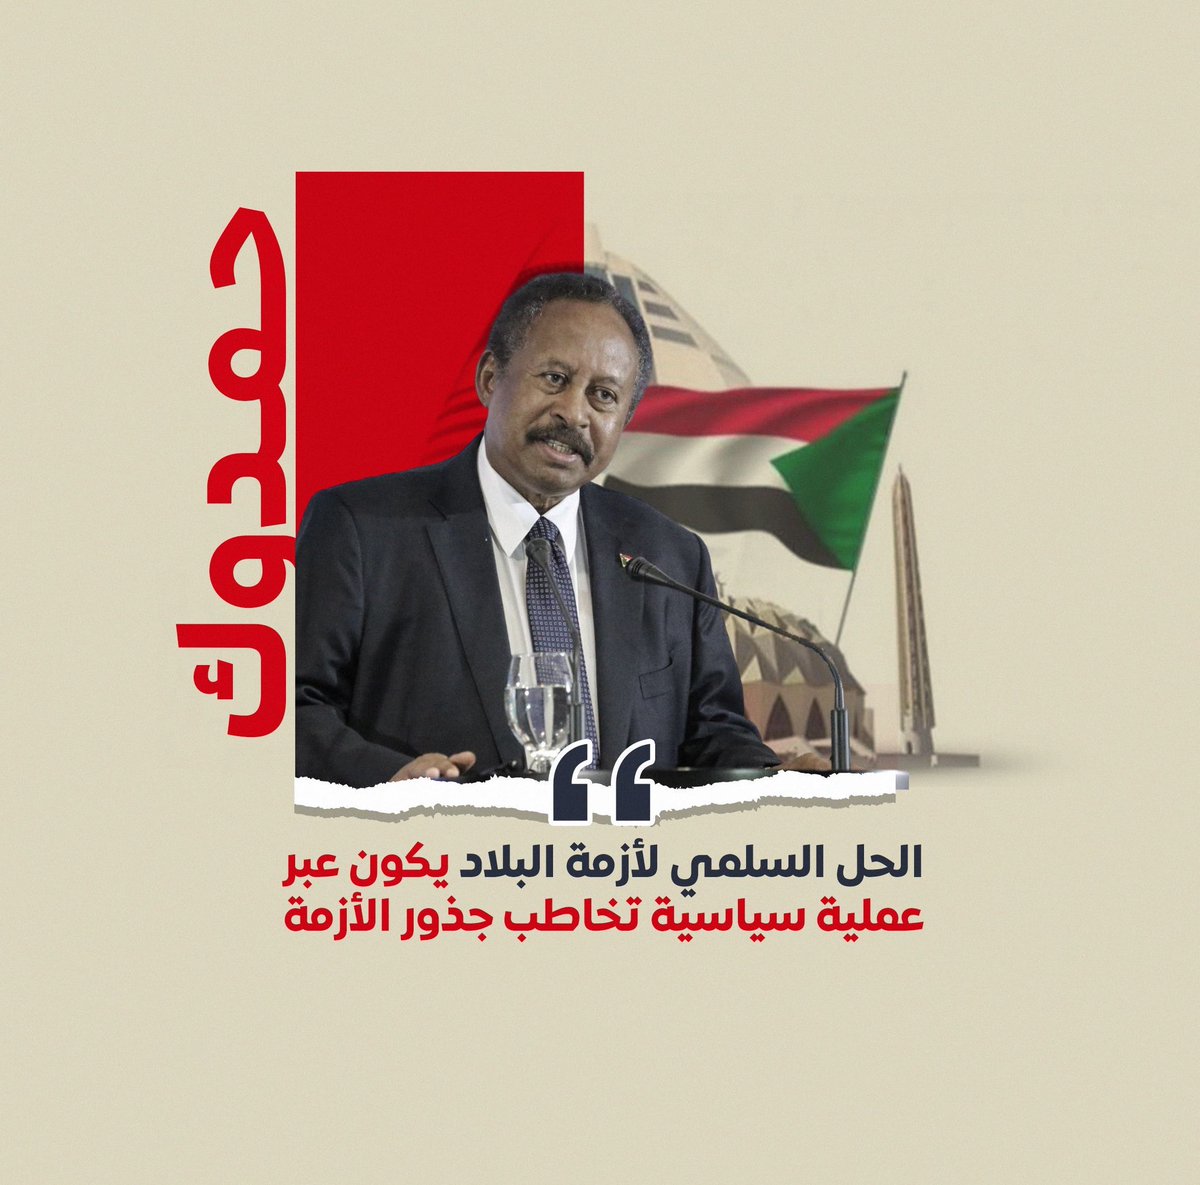 دكتور عبدالله #حمدوك : وحدتنا تصنع السلام 
#السودان 🇸🇩💚